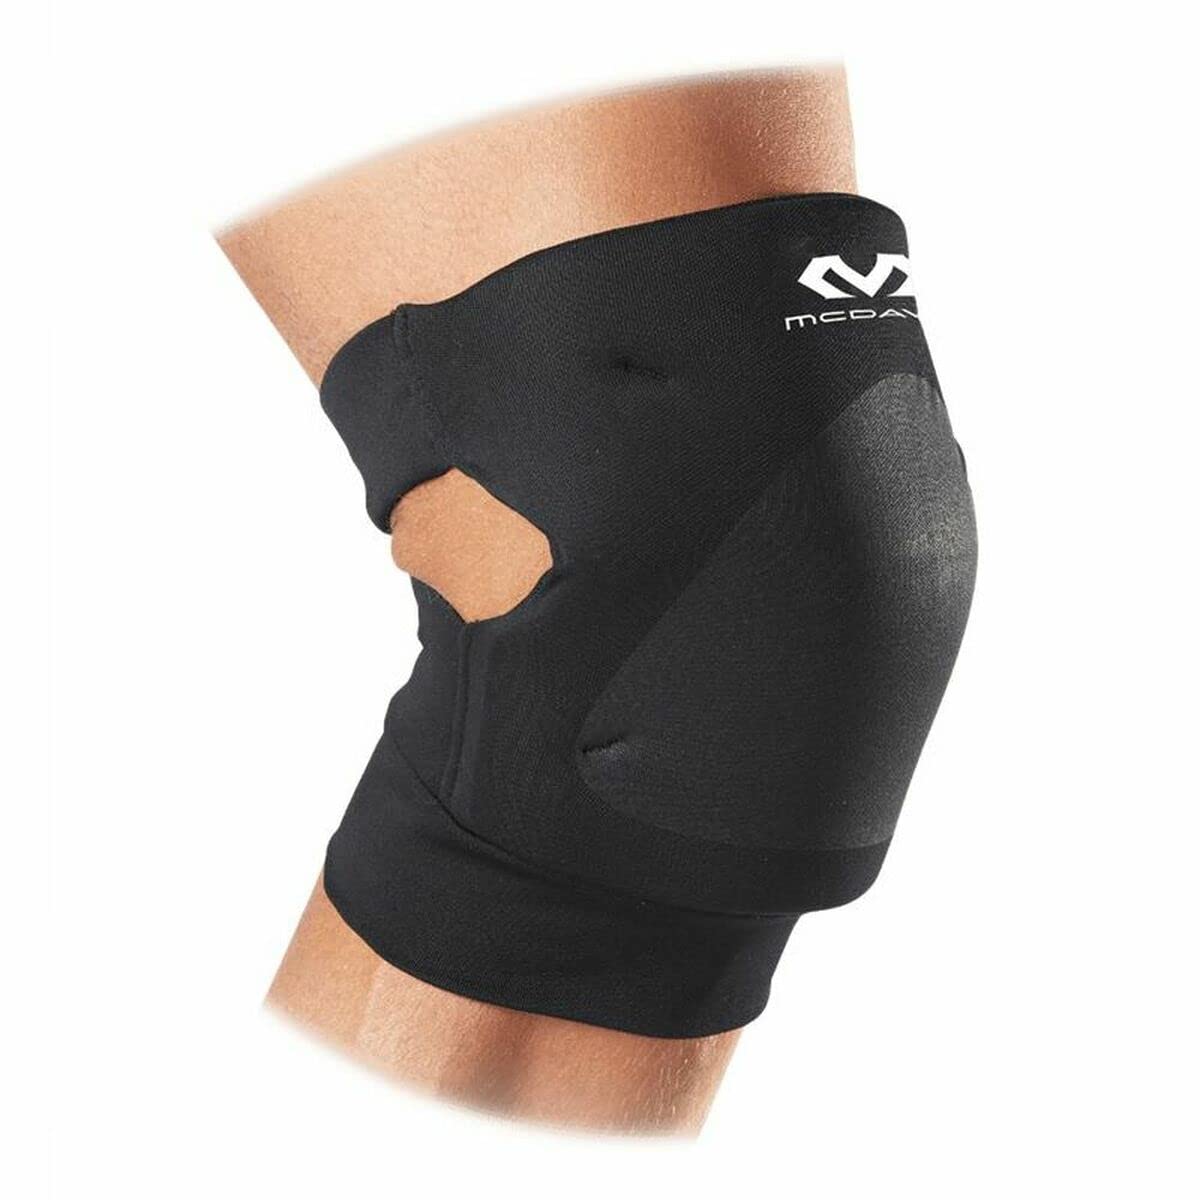 McDavid Knieschüchter Set mit Offene Rückseite für größere Bewegungsfreiheit - für Damen und Herren - schwarz oder dunkelblau - Gebrauch: Volleyball